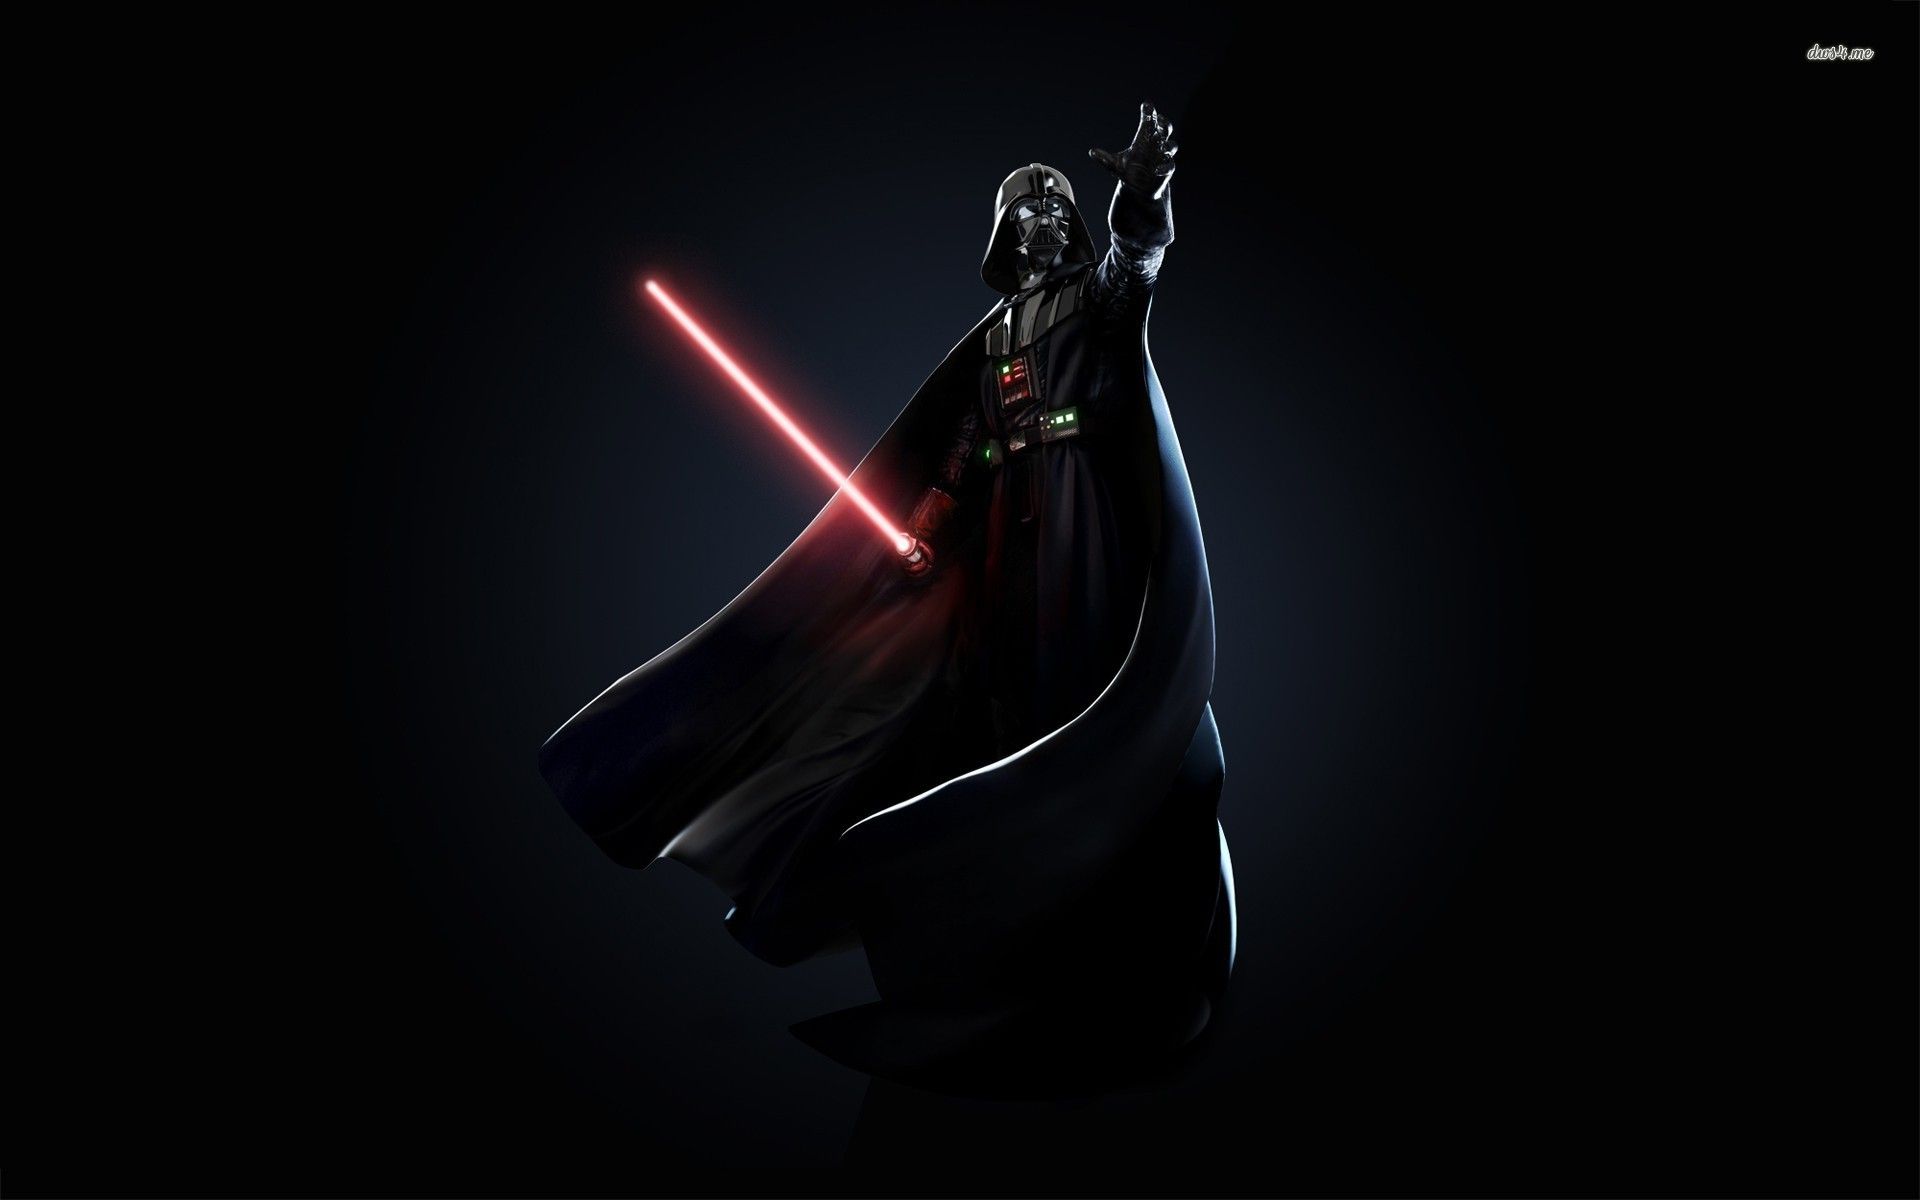 Darth Vader wallpaper - Digital Art wallpapers -